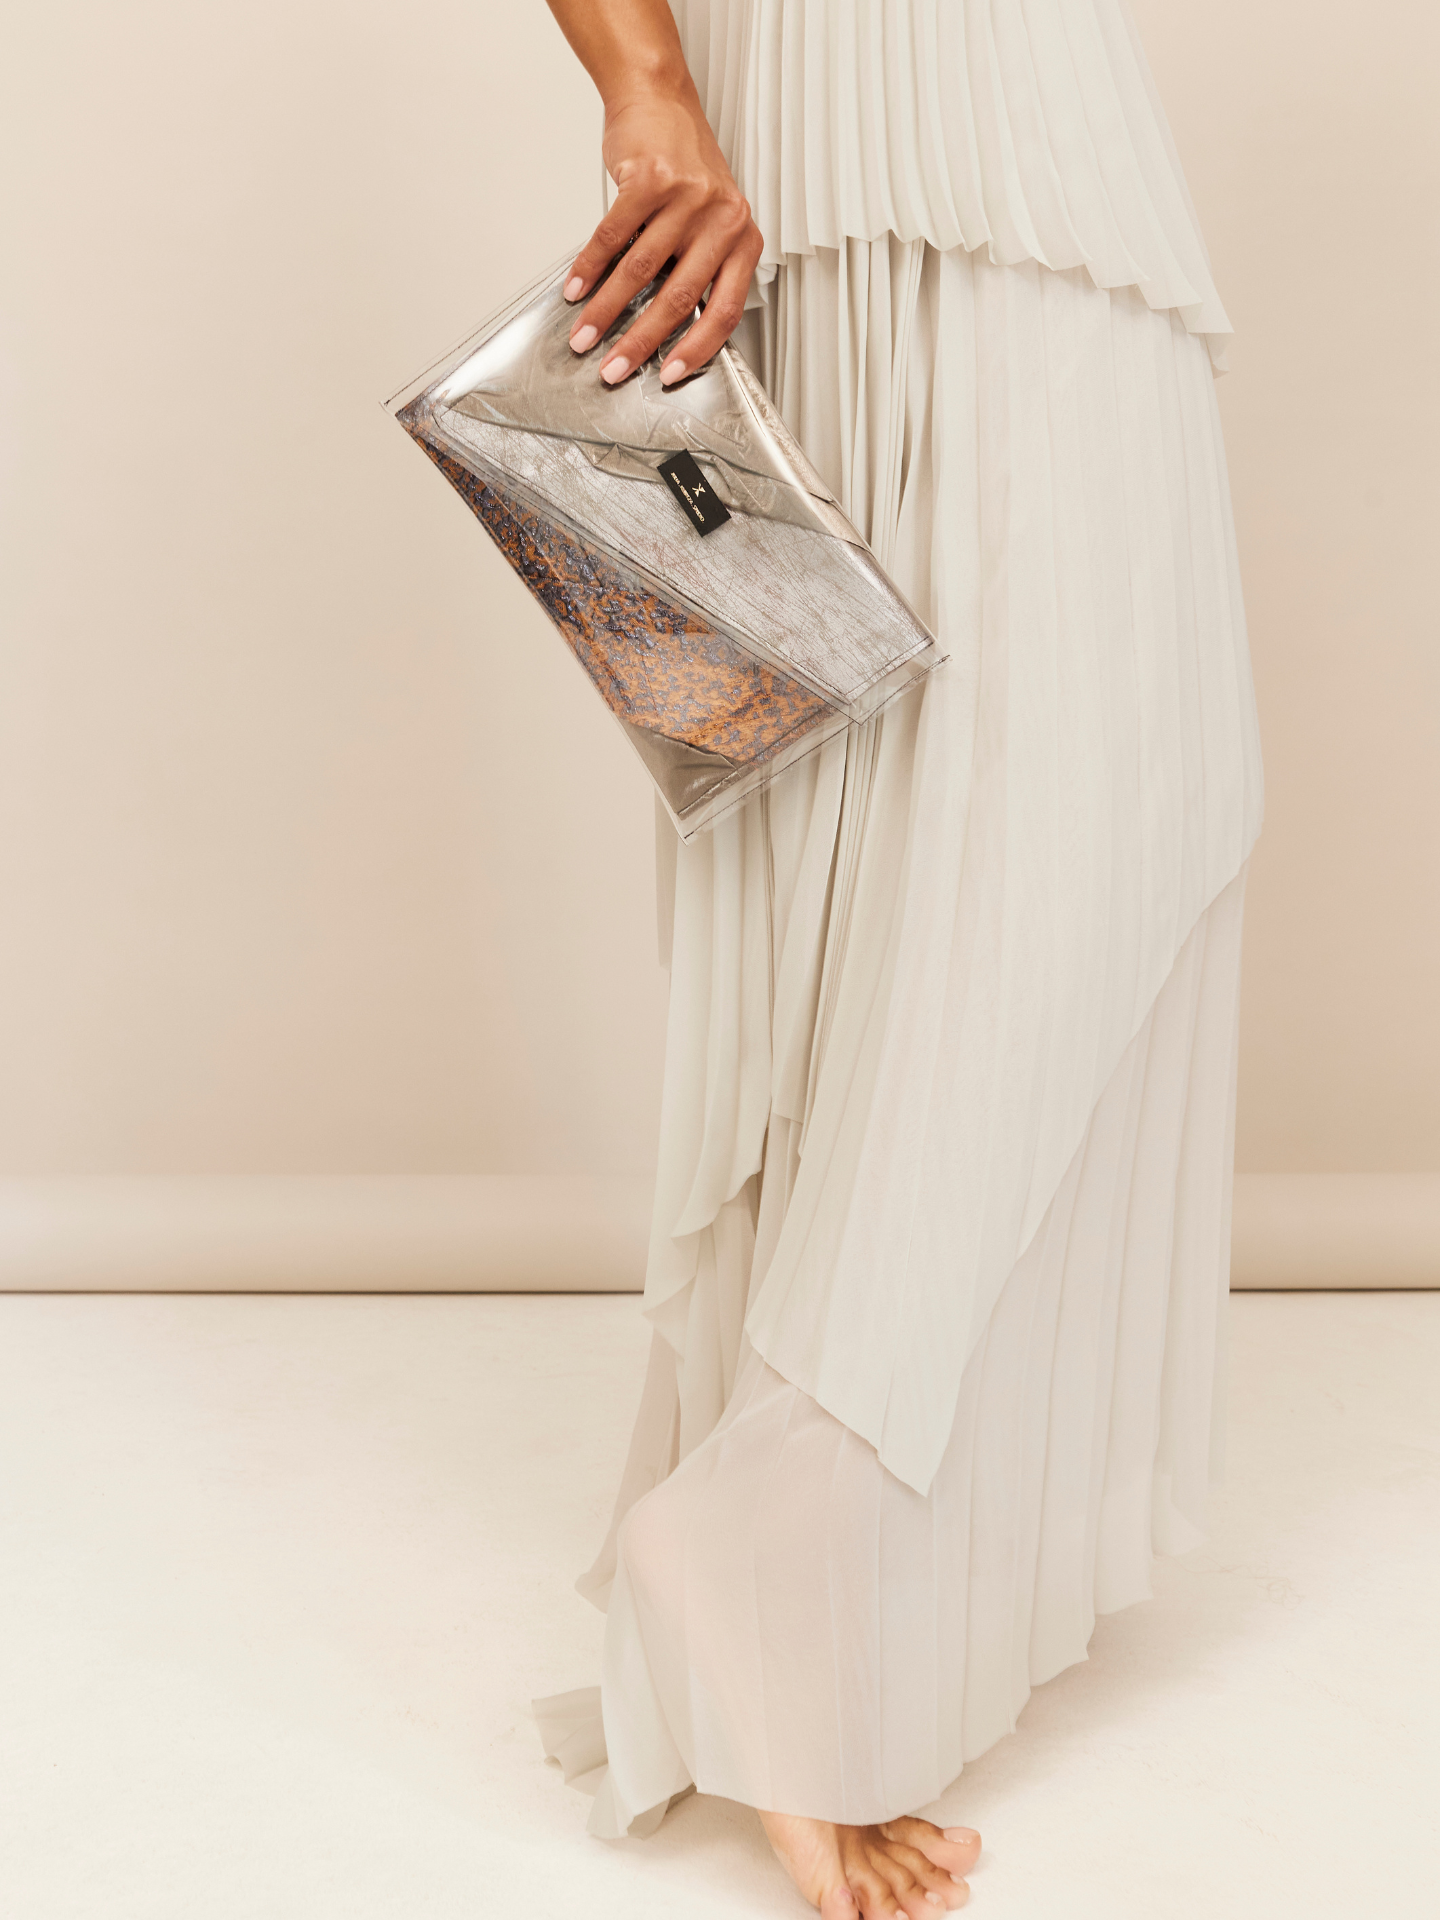 Frau in hellem Kleid trägt eine Tasche aus verschiedenen Designerstoffen, als Kunstwerk dargestellt und als Tasche gebündelt.